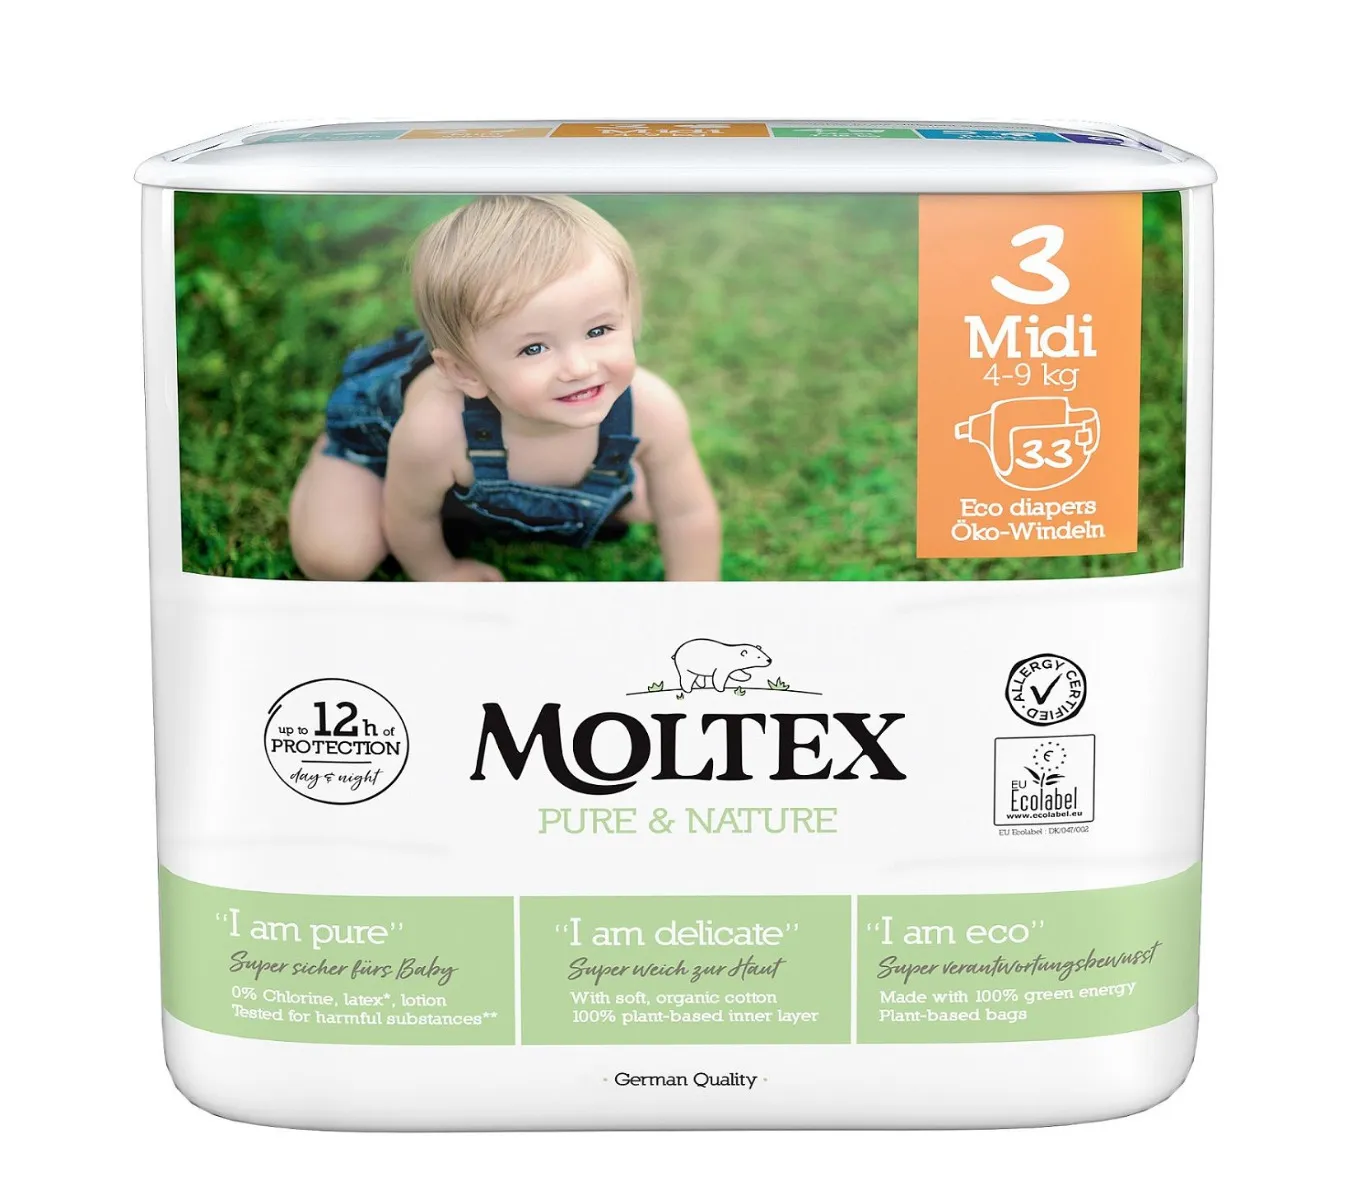 Moltex Pure & Nature Midi 4-9 kg